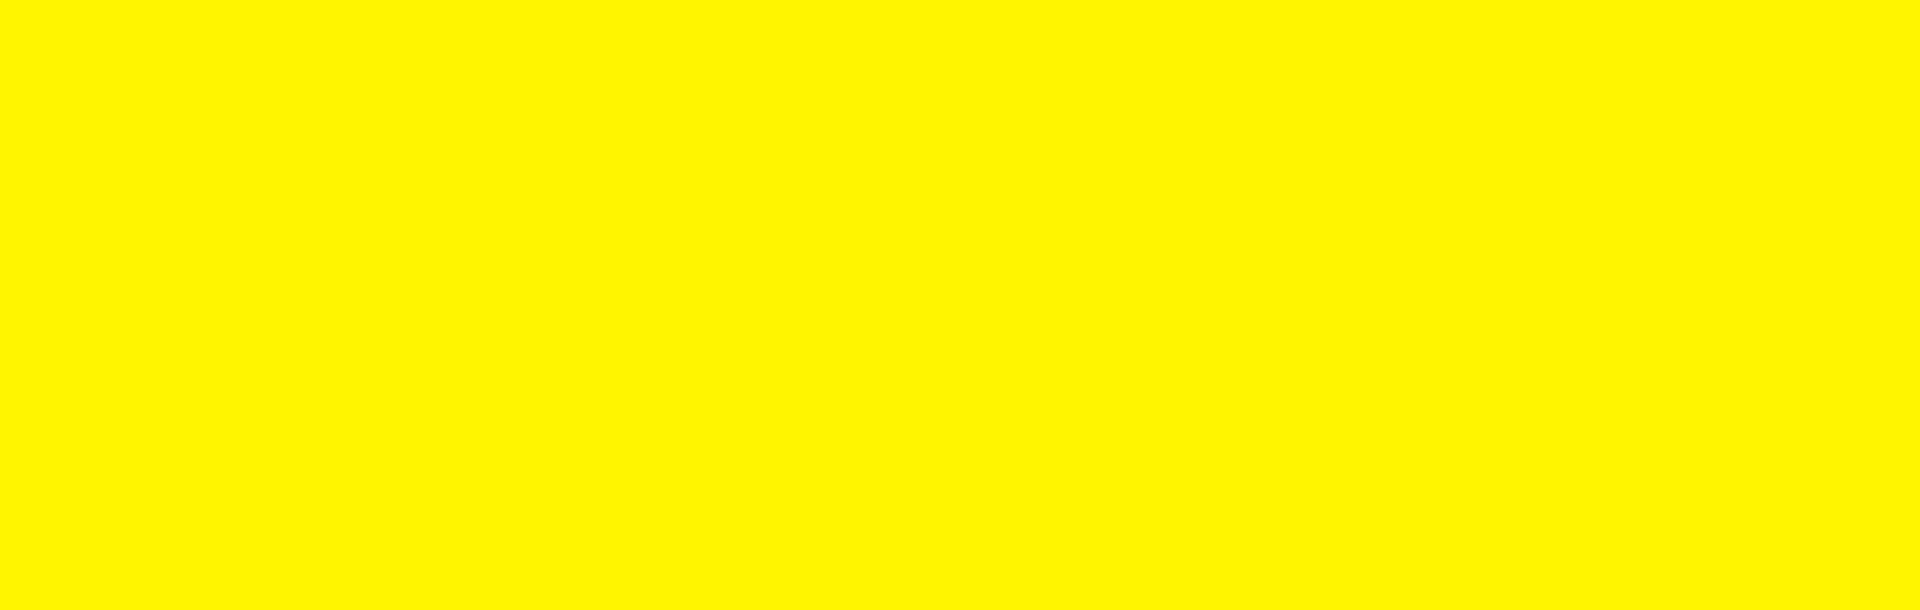 1 24 2017. Яркий желтый цвет. Ярко желтый цвет. Желтый однотонный. Ярко желтый фон.